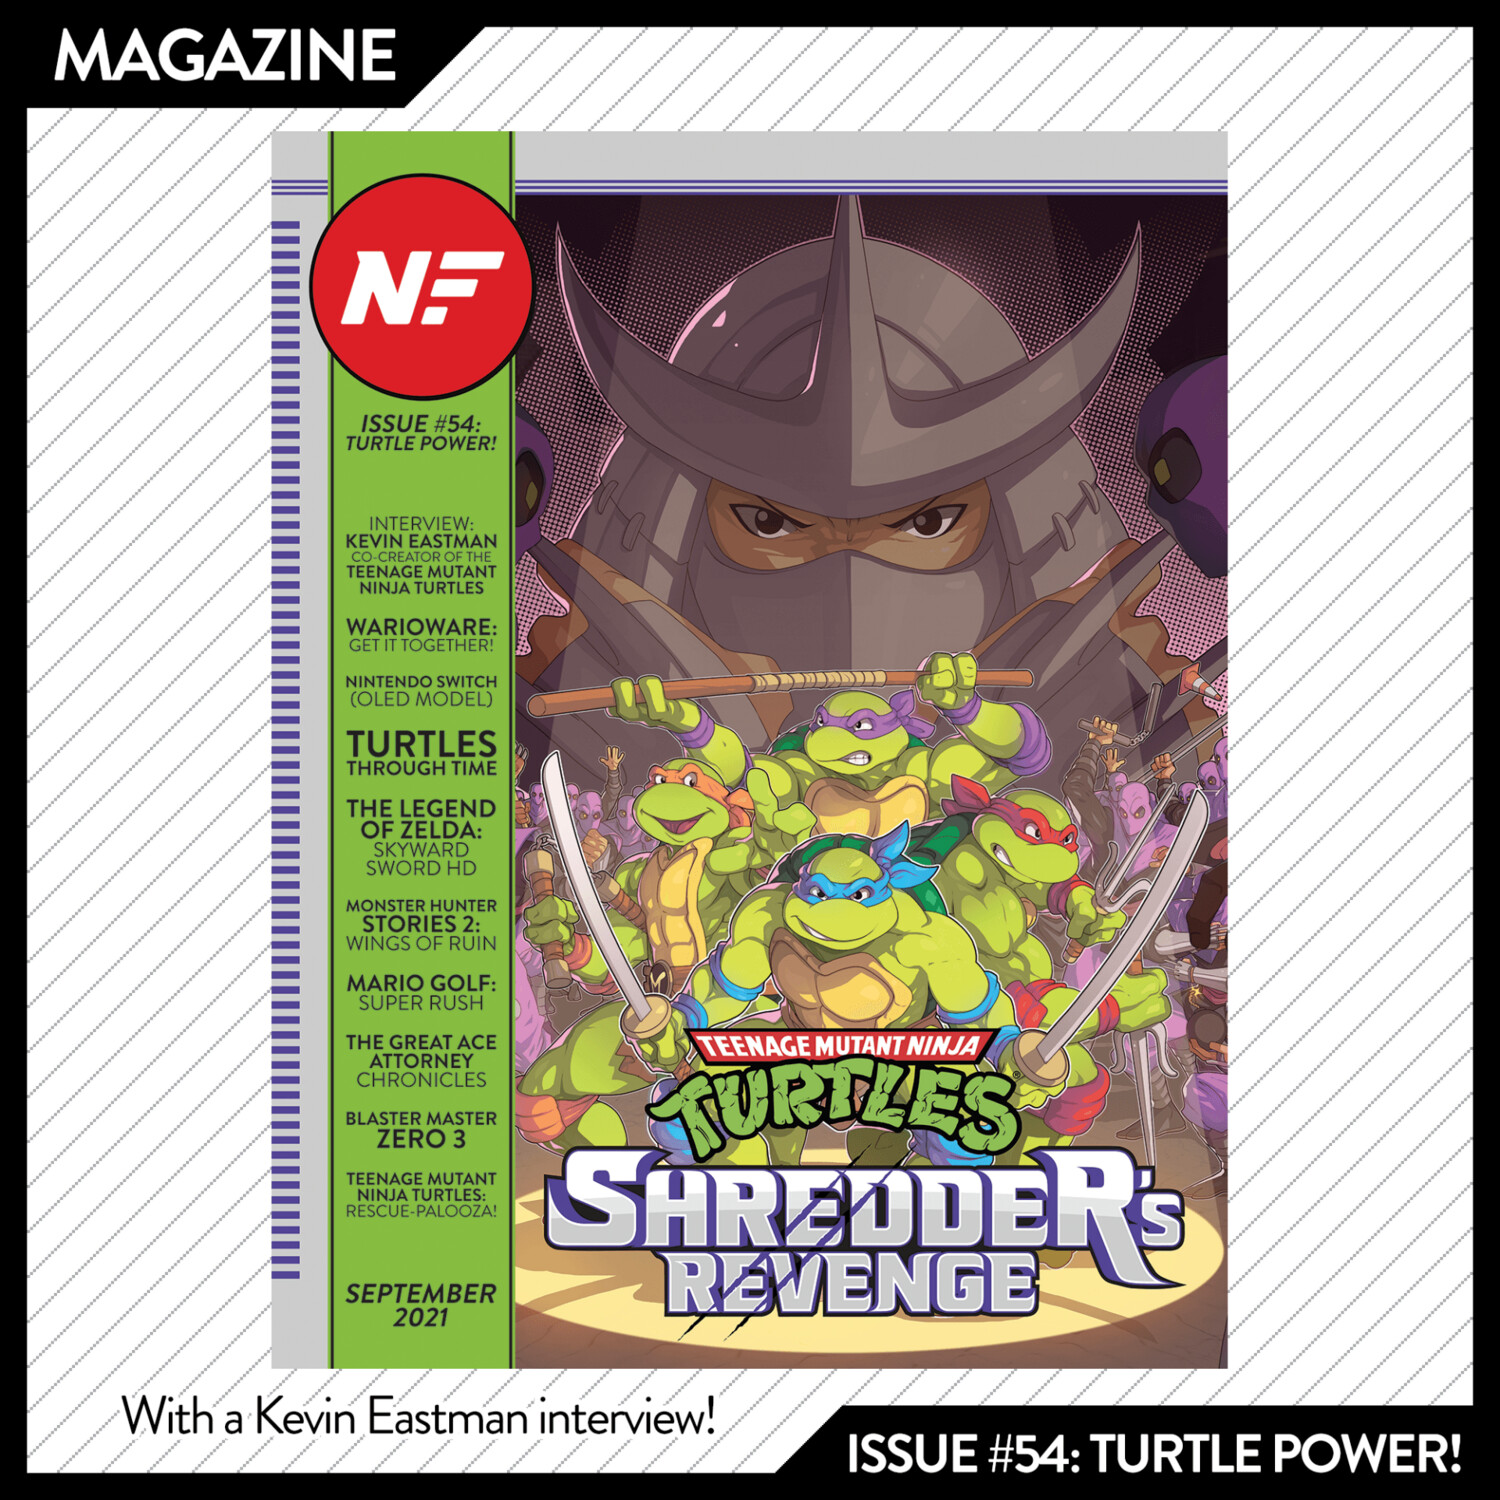 Issue #54: Turtle Power! – September 2021